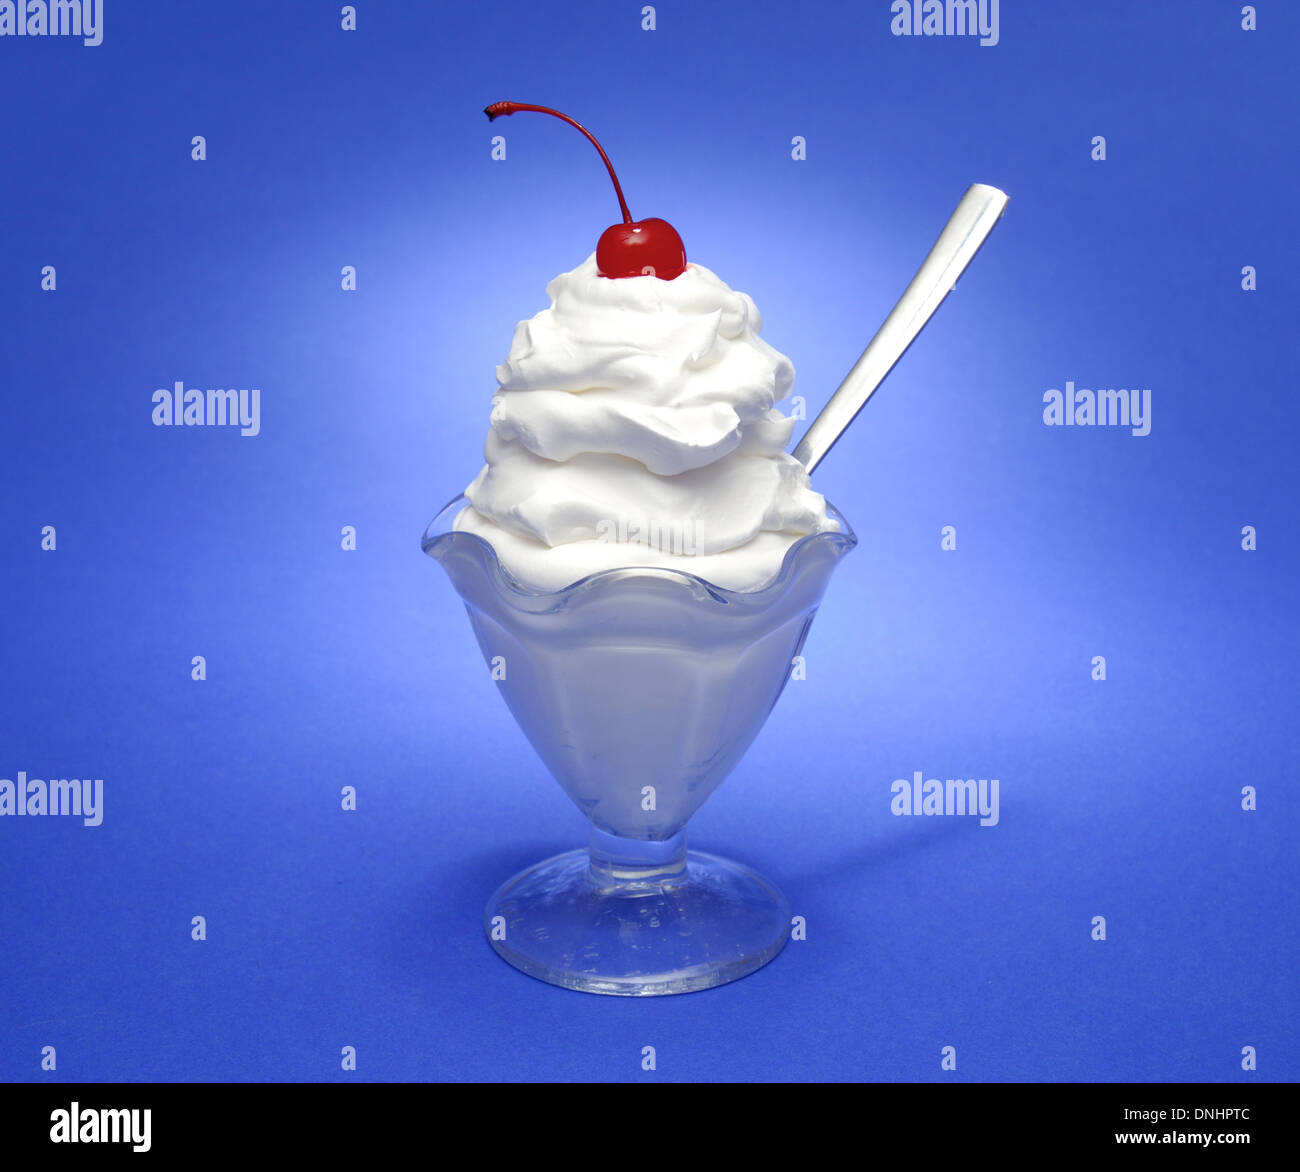 Un bianco crema dessert gelato di vetro con un cucchiaio e una ciliegia di colore rosso sulla parte superiore della panna montata. Foto Stock